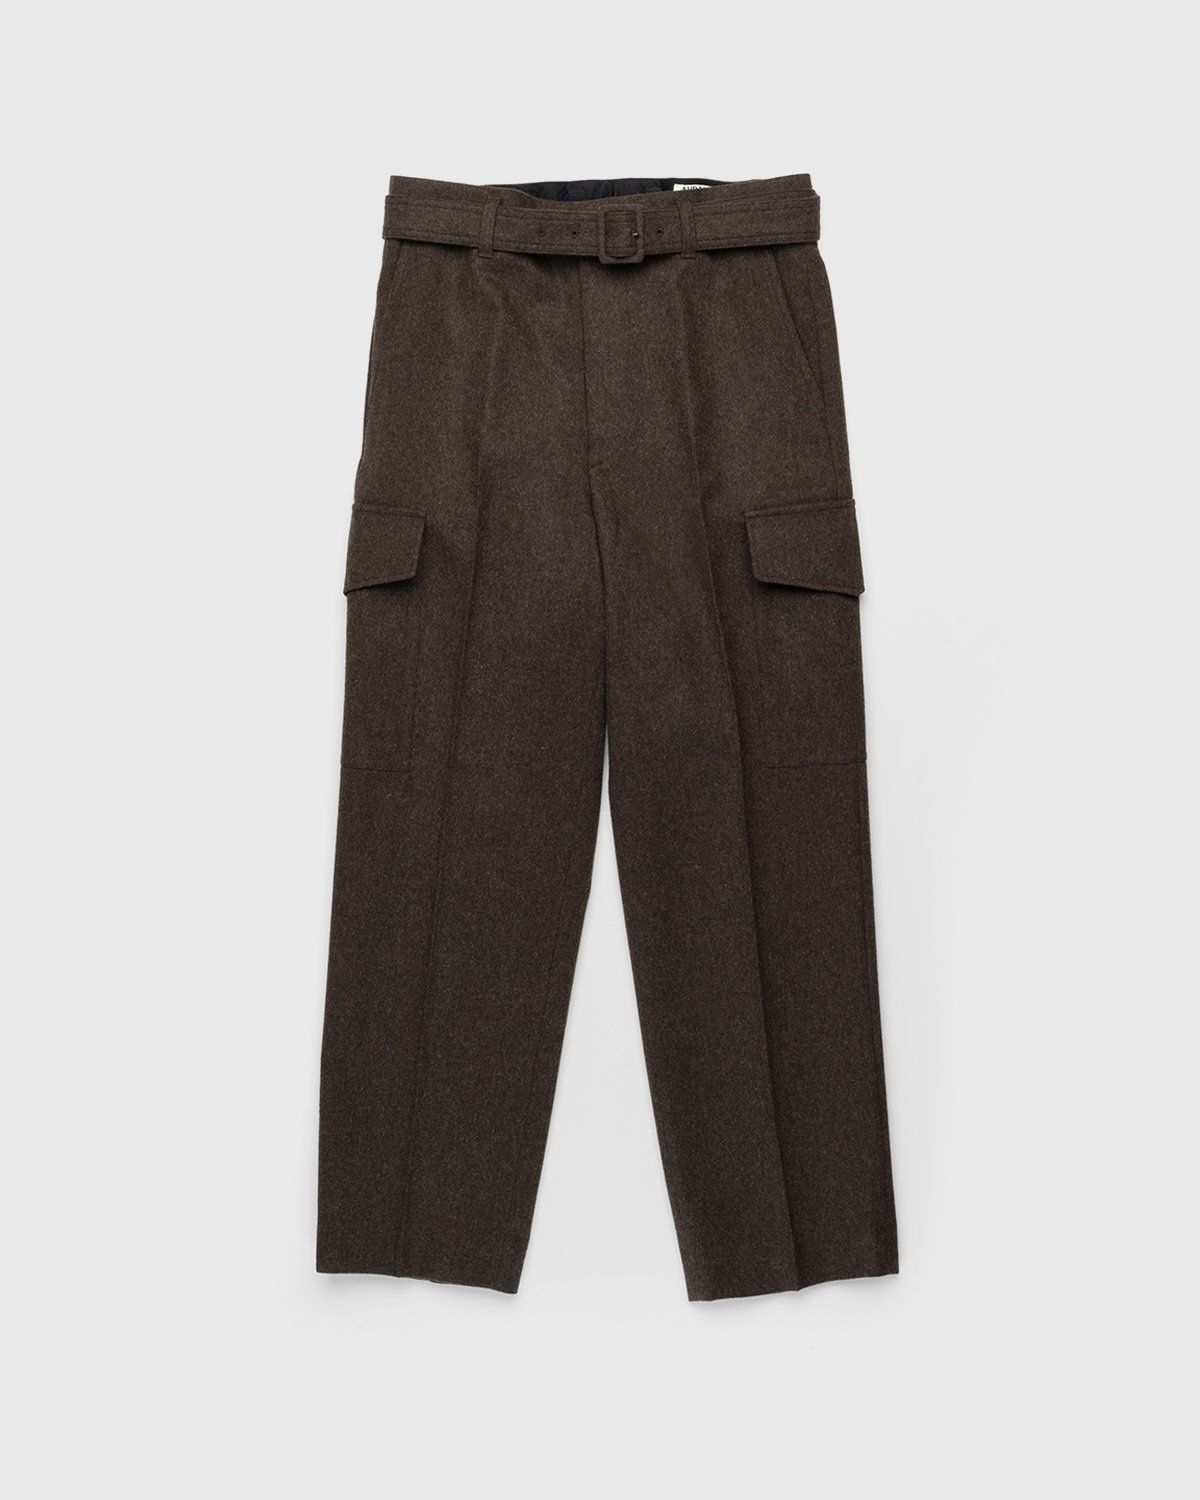 Auralee – High-Waisted Shetland Wool Pants Dark Brown - Pants - Brown - Image 1